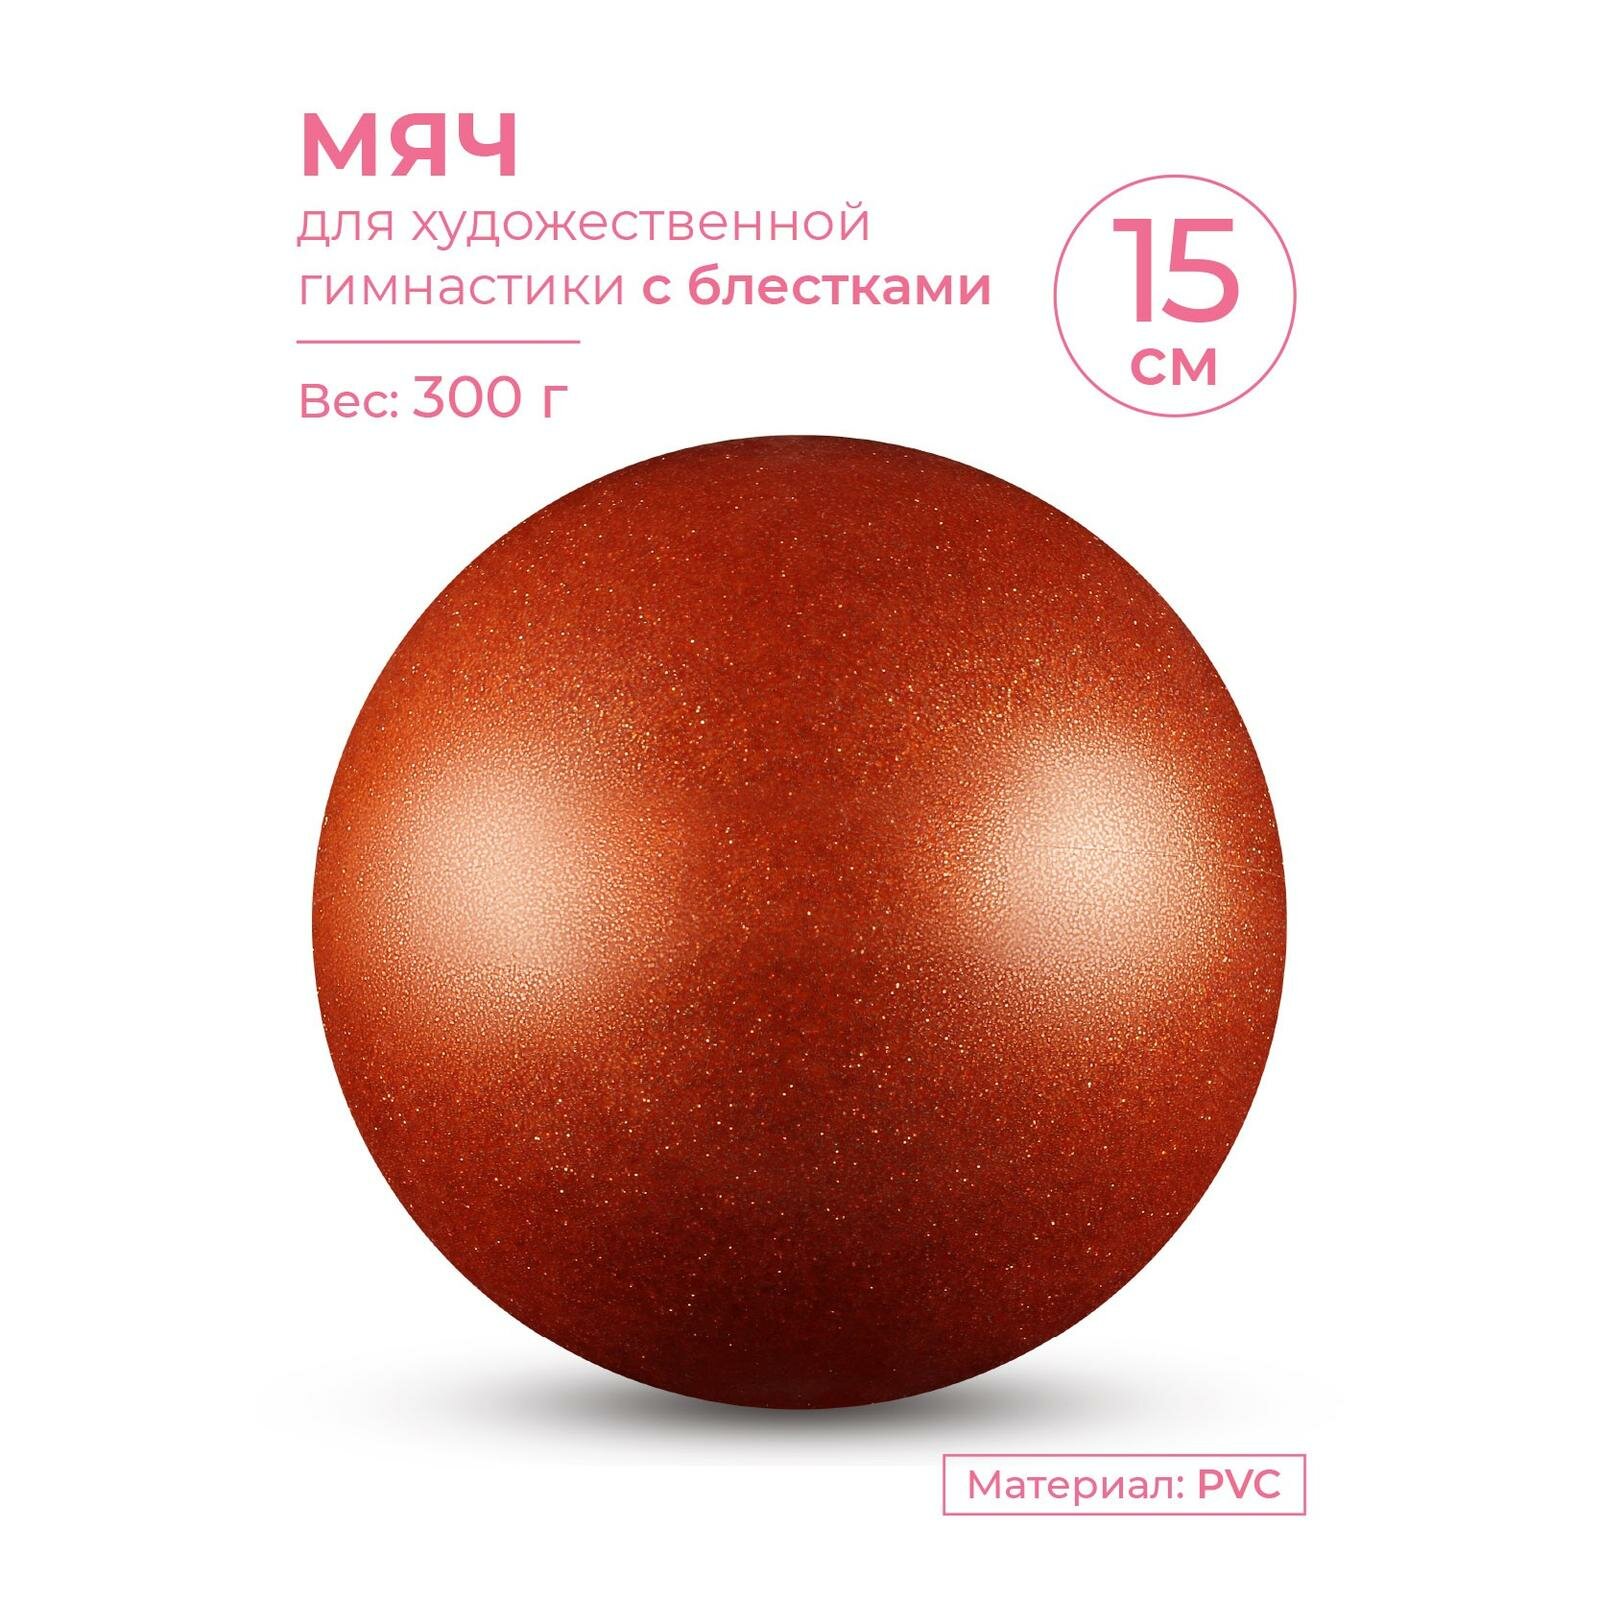 Мяч для художественной гимнастики INDIGO металлик 300 г IN119 Оранжевый с блестками 15 см